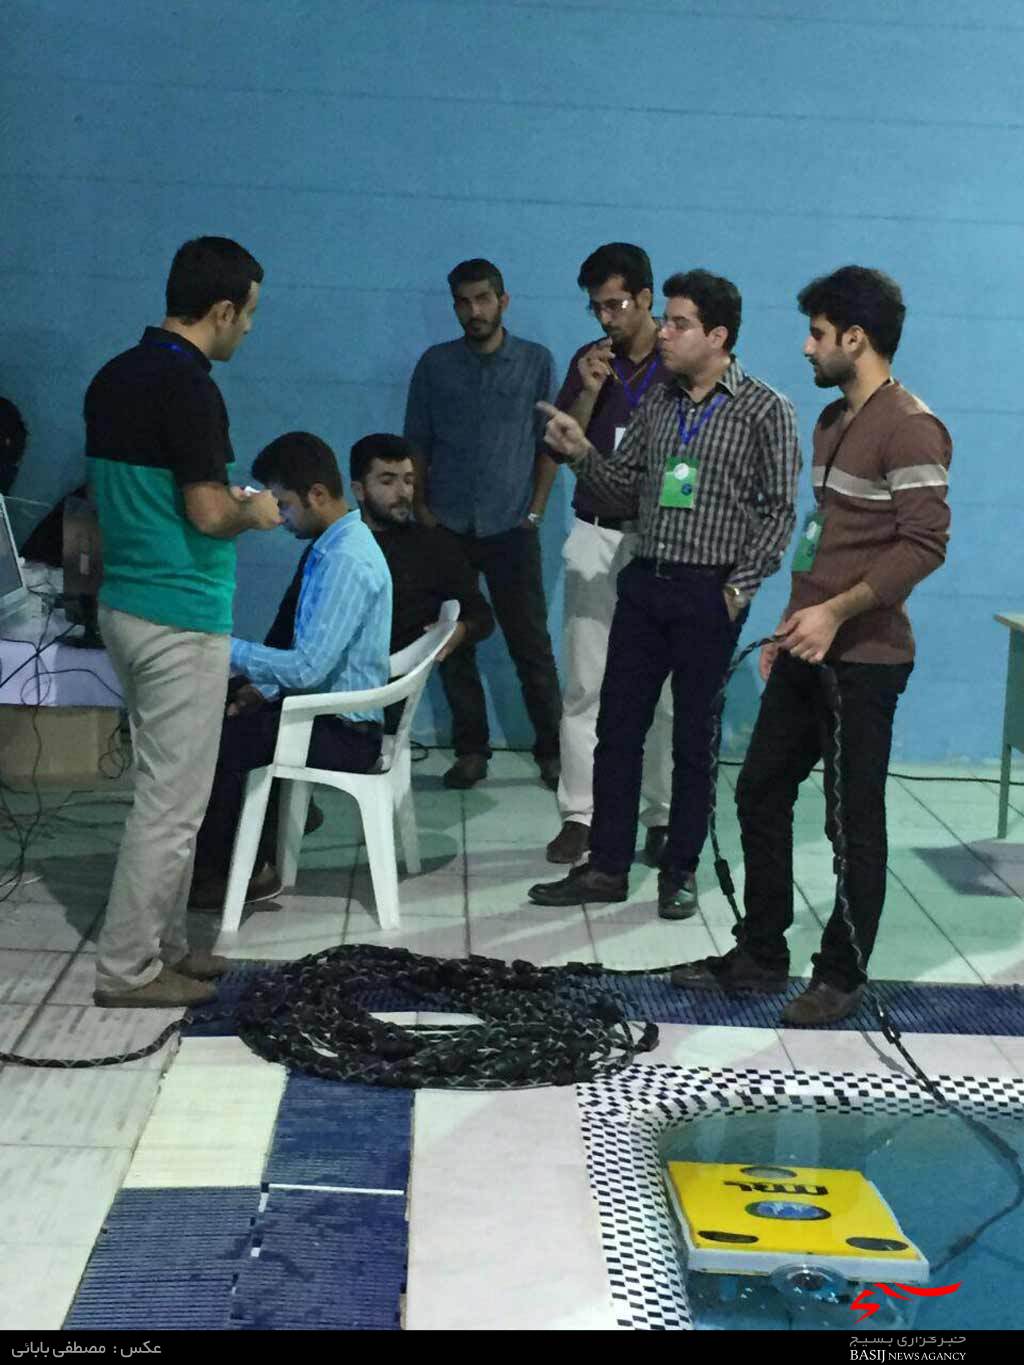 مقام برتر ربات زیردریایی دانشگاه آزاد اسلامی قزوین در جشنواره ملی دریا مسیر پیشرفت